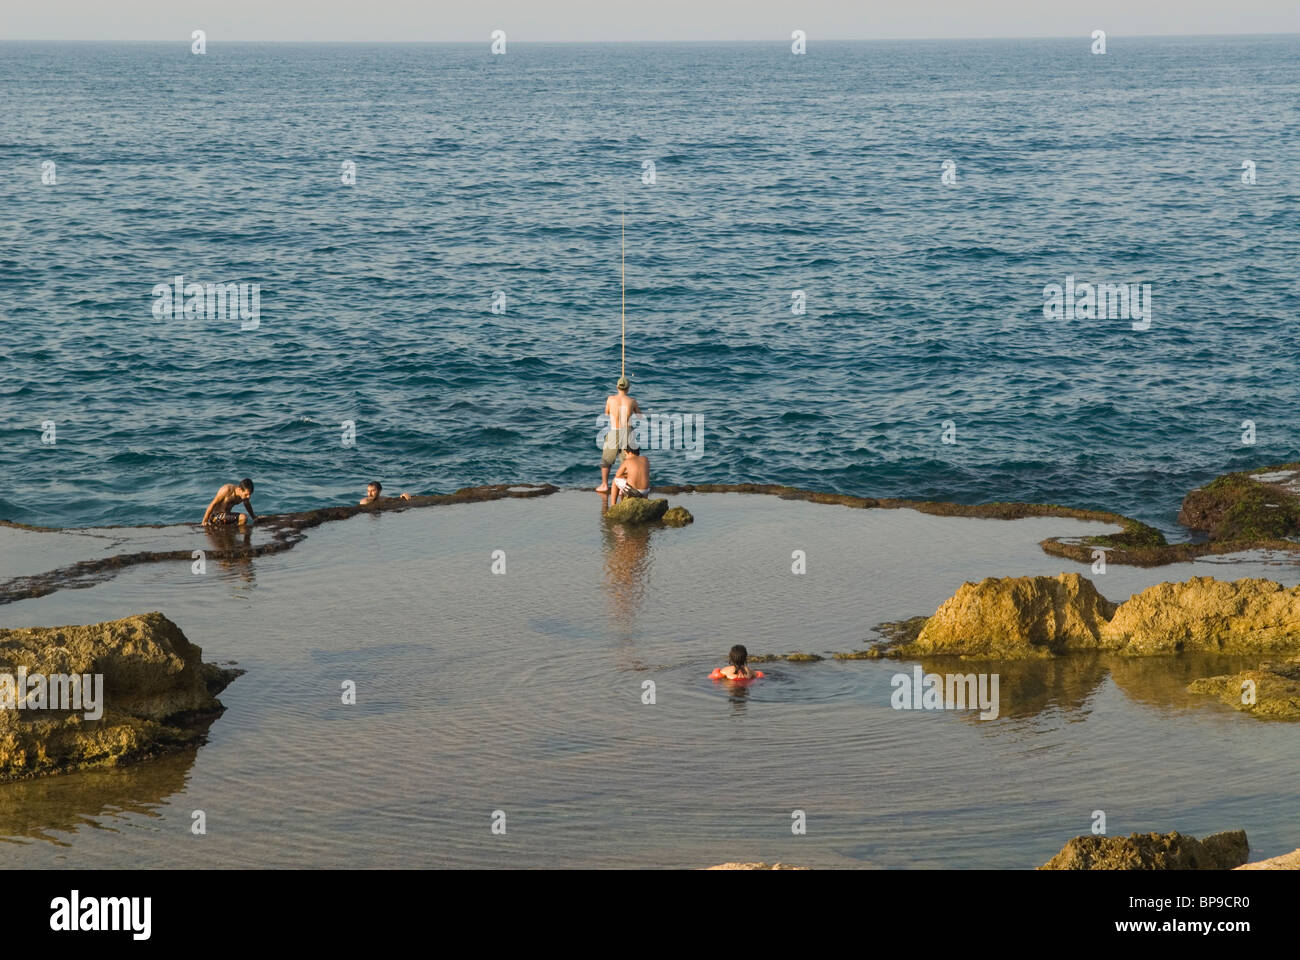 Menschen, Angeln und Schwimmen im Mittelmeer in Beirut Libanon Nahost Asien Stockfoto